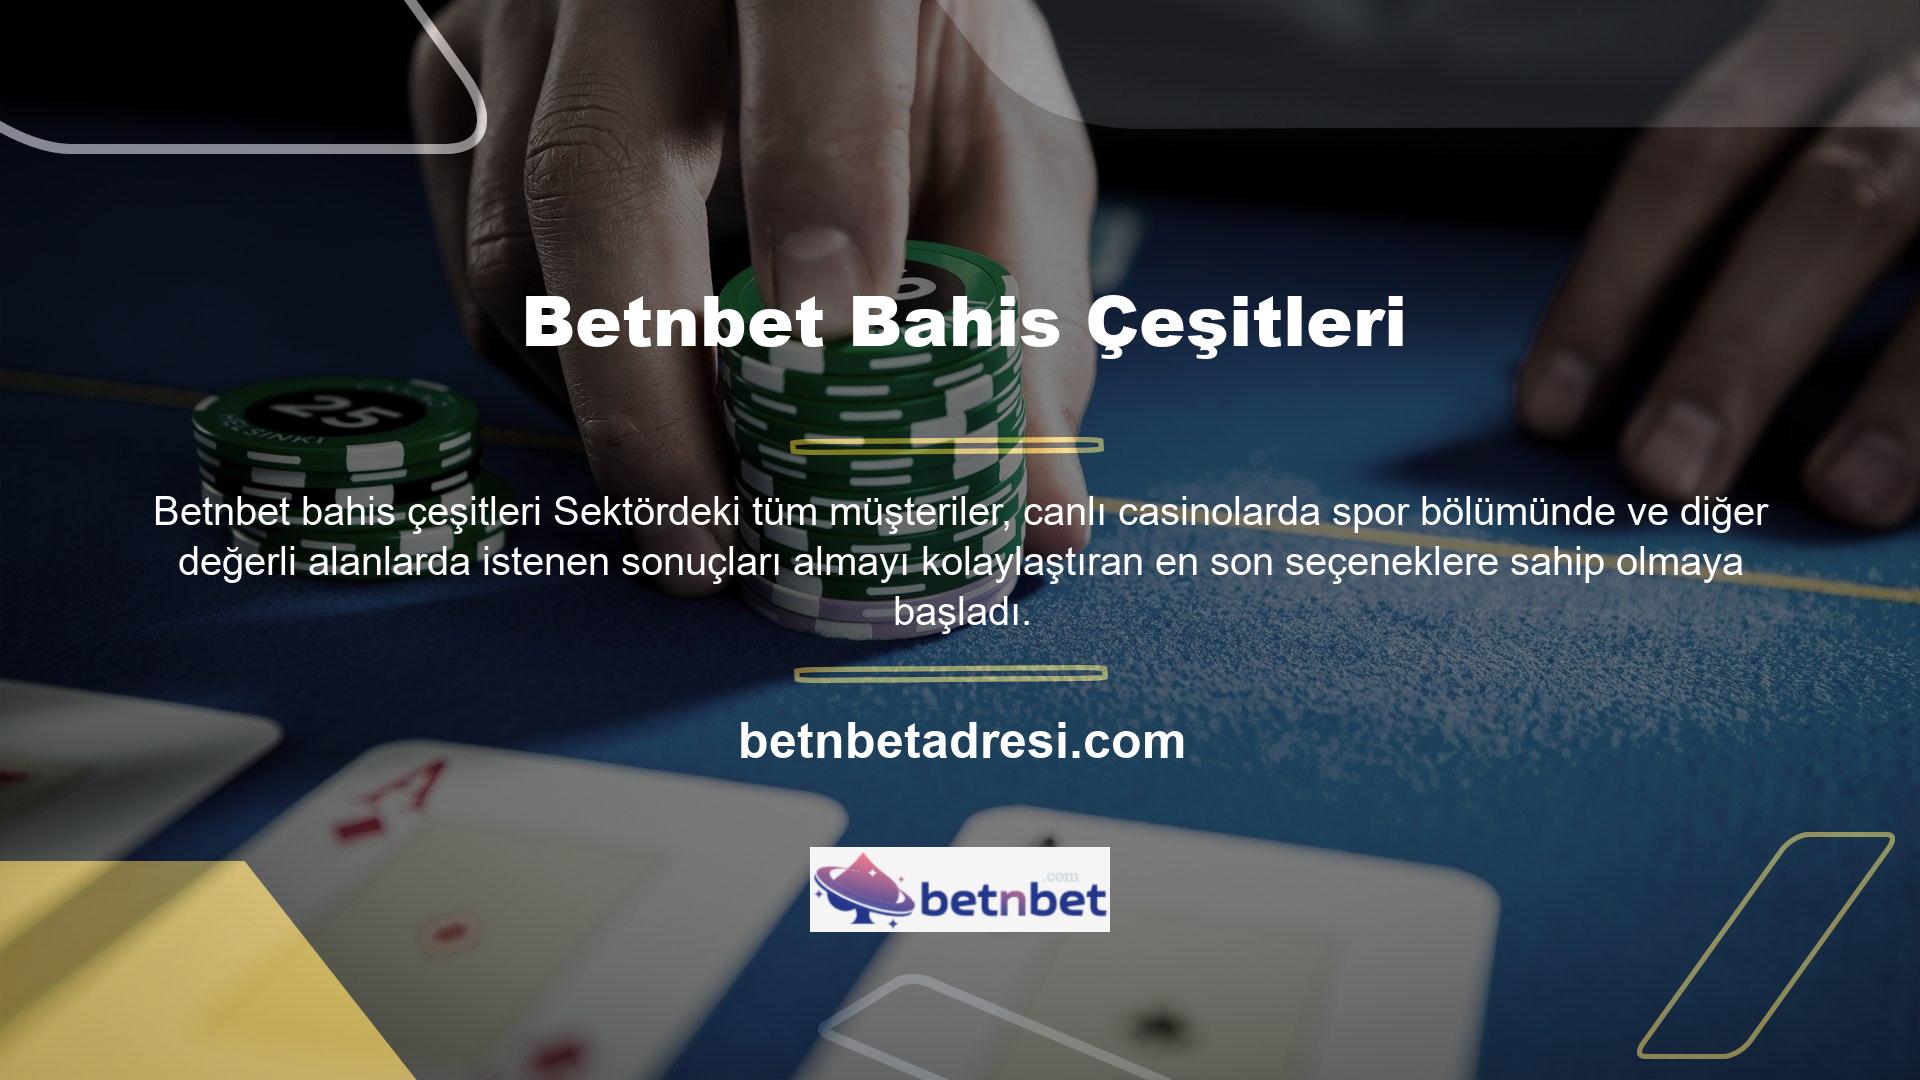 Şimdi Betnbet spor kitabı sayesinde canlı casino oyunları ve güncellenen kurum seçenekleri artık herkesin erişimine açık